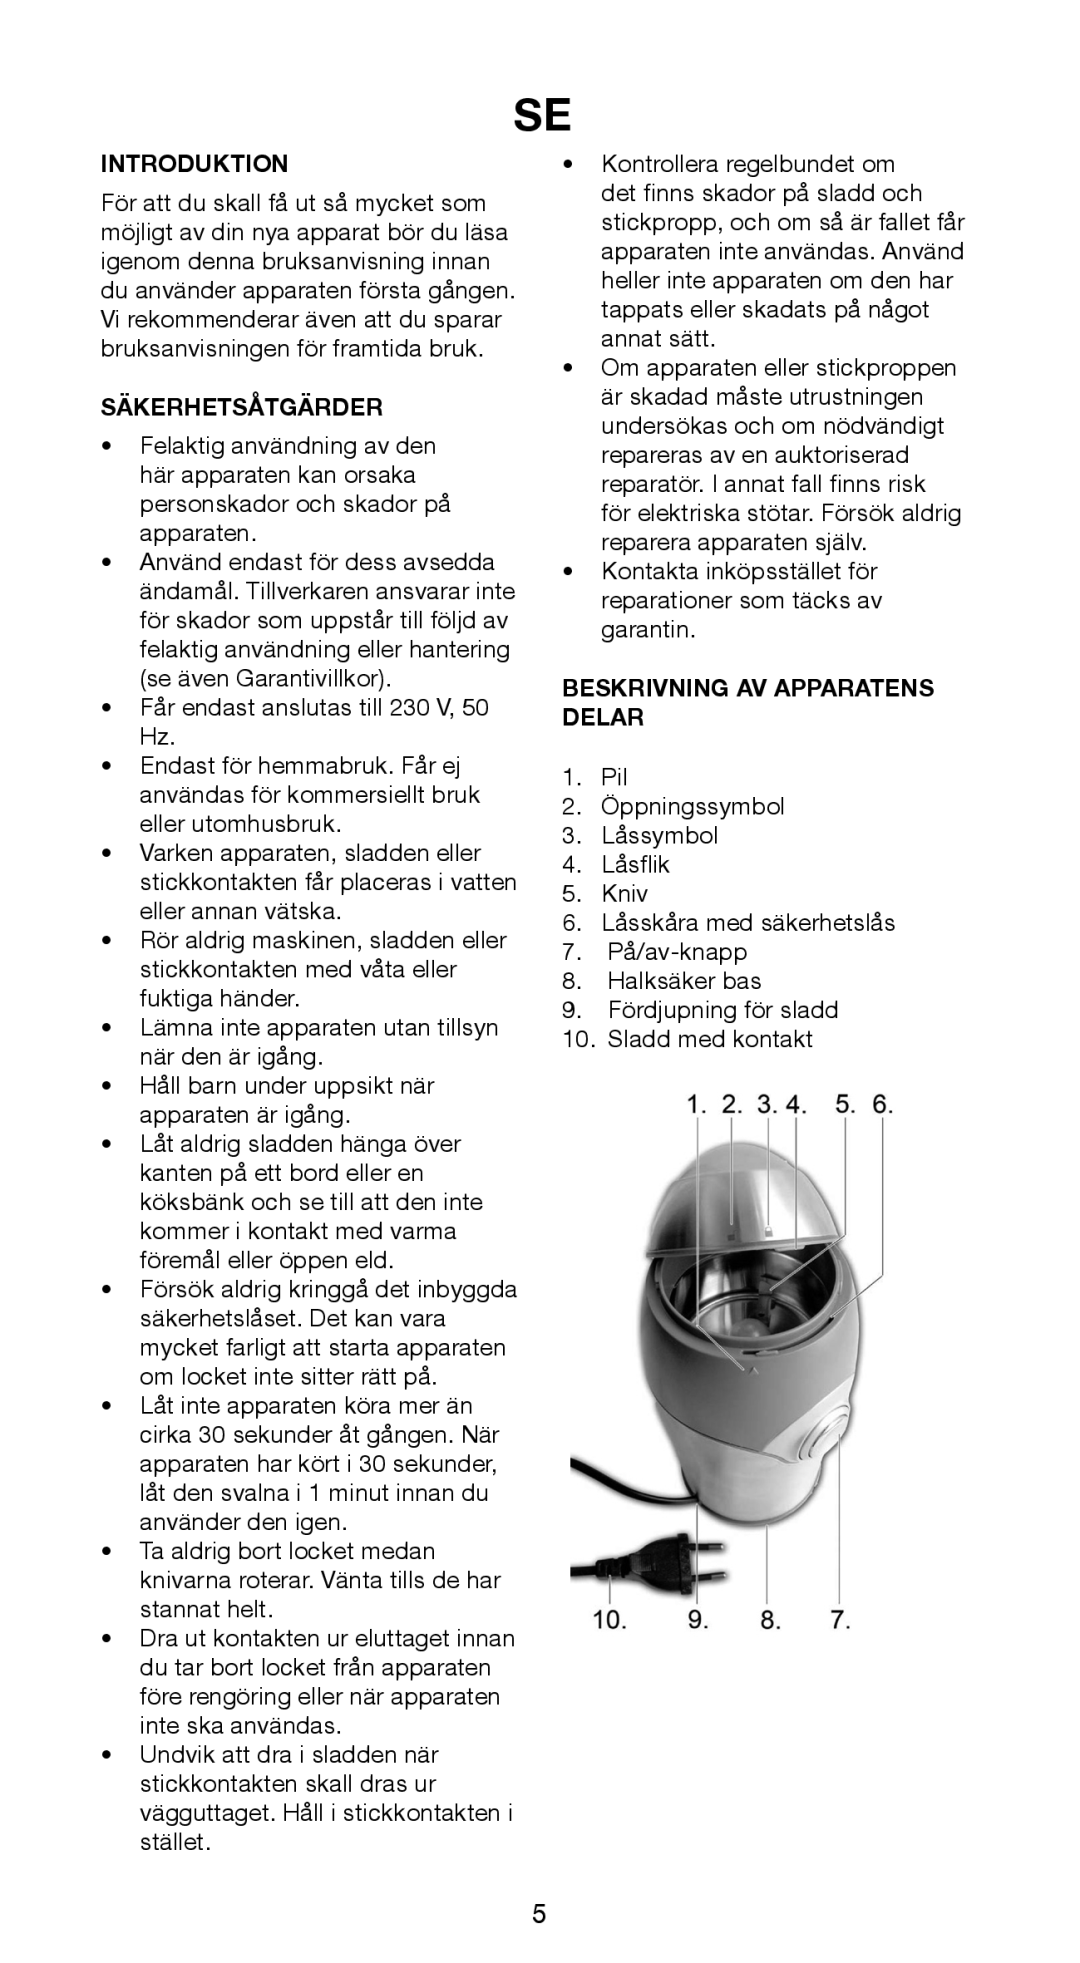 Butler 645-141 manual Säkerhetsåtgärder, Beskrivning Av Apparatens Delar, Introduktion 